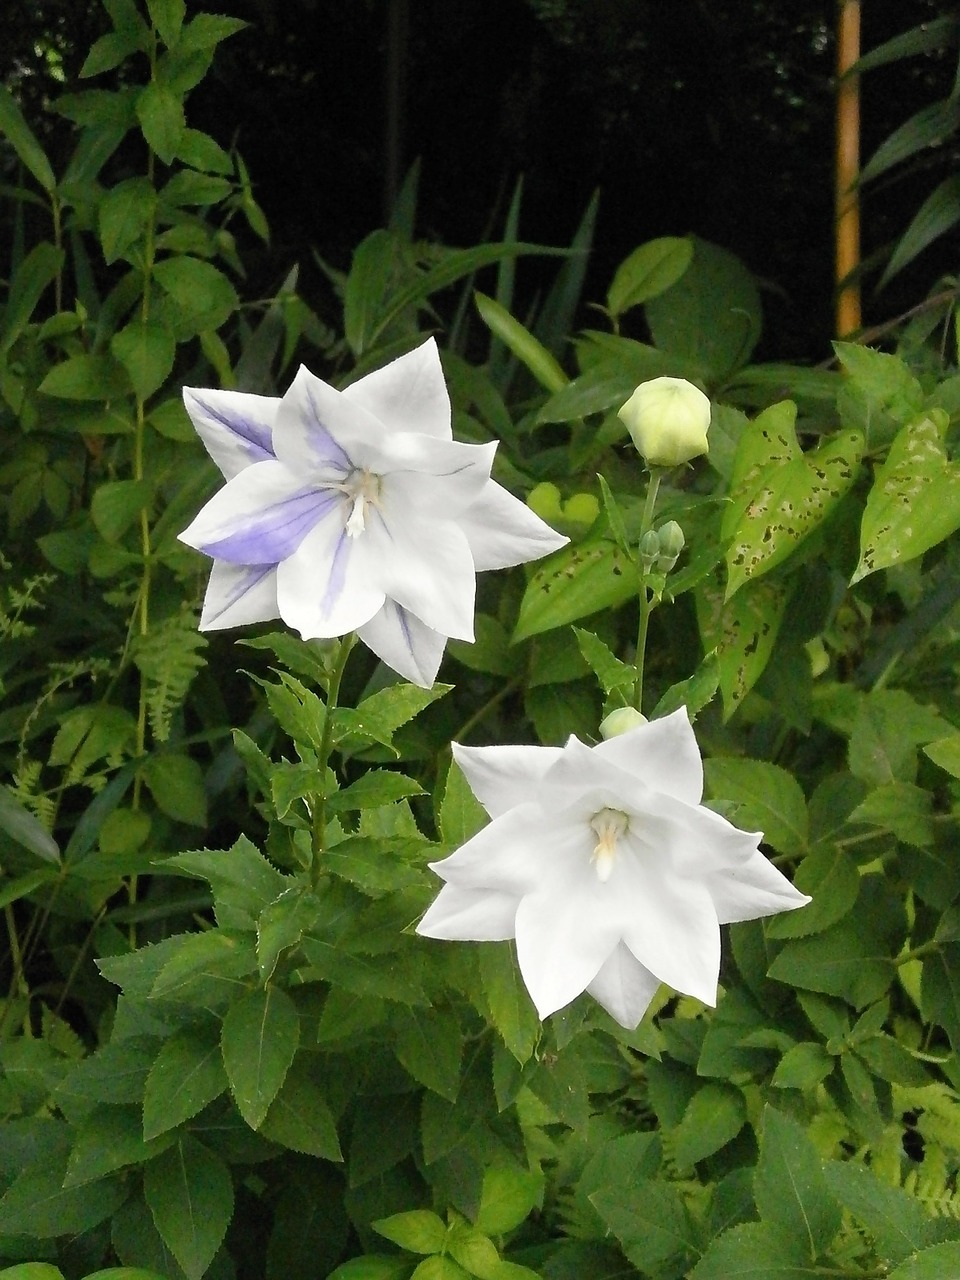 kikyo platycodon grandiflorum a dc white flowers free photo